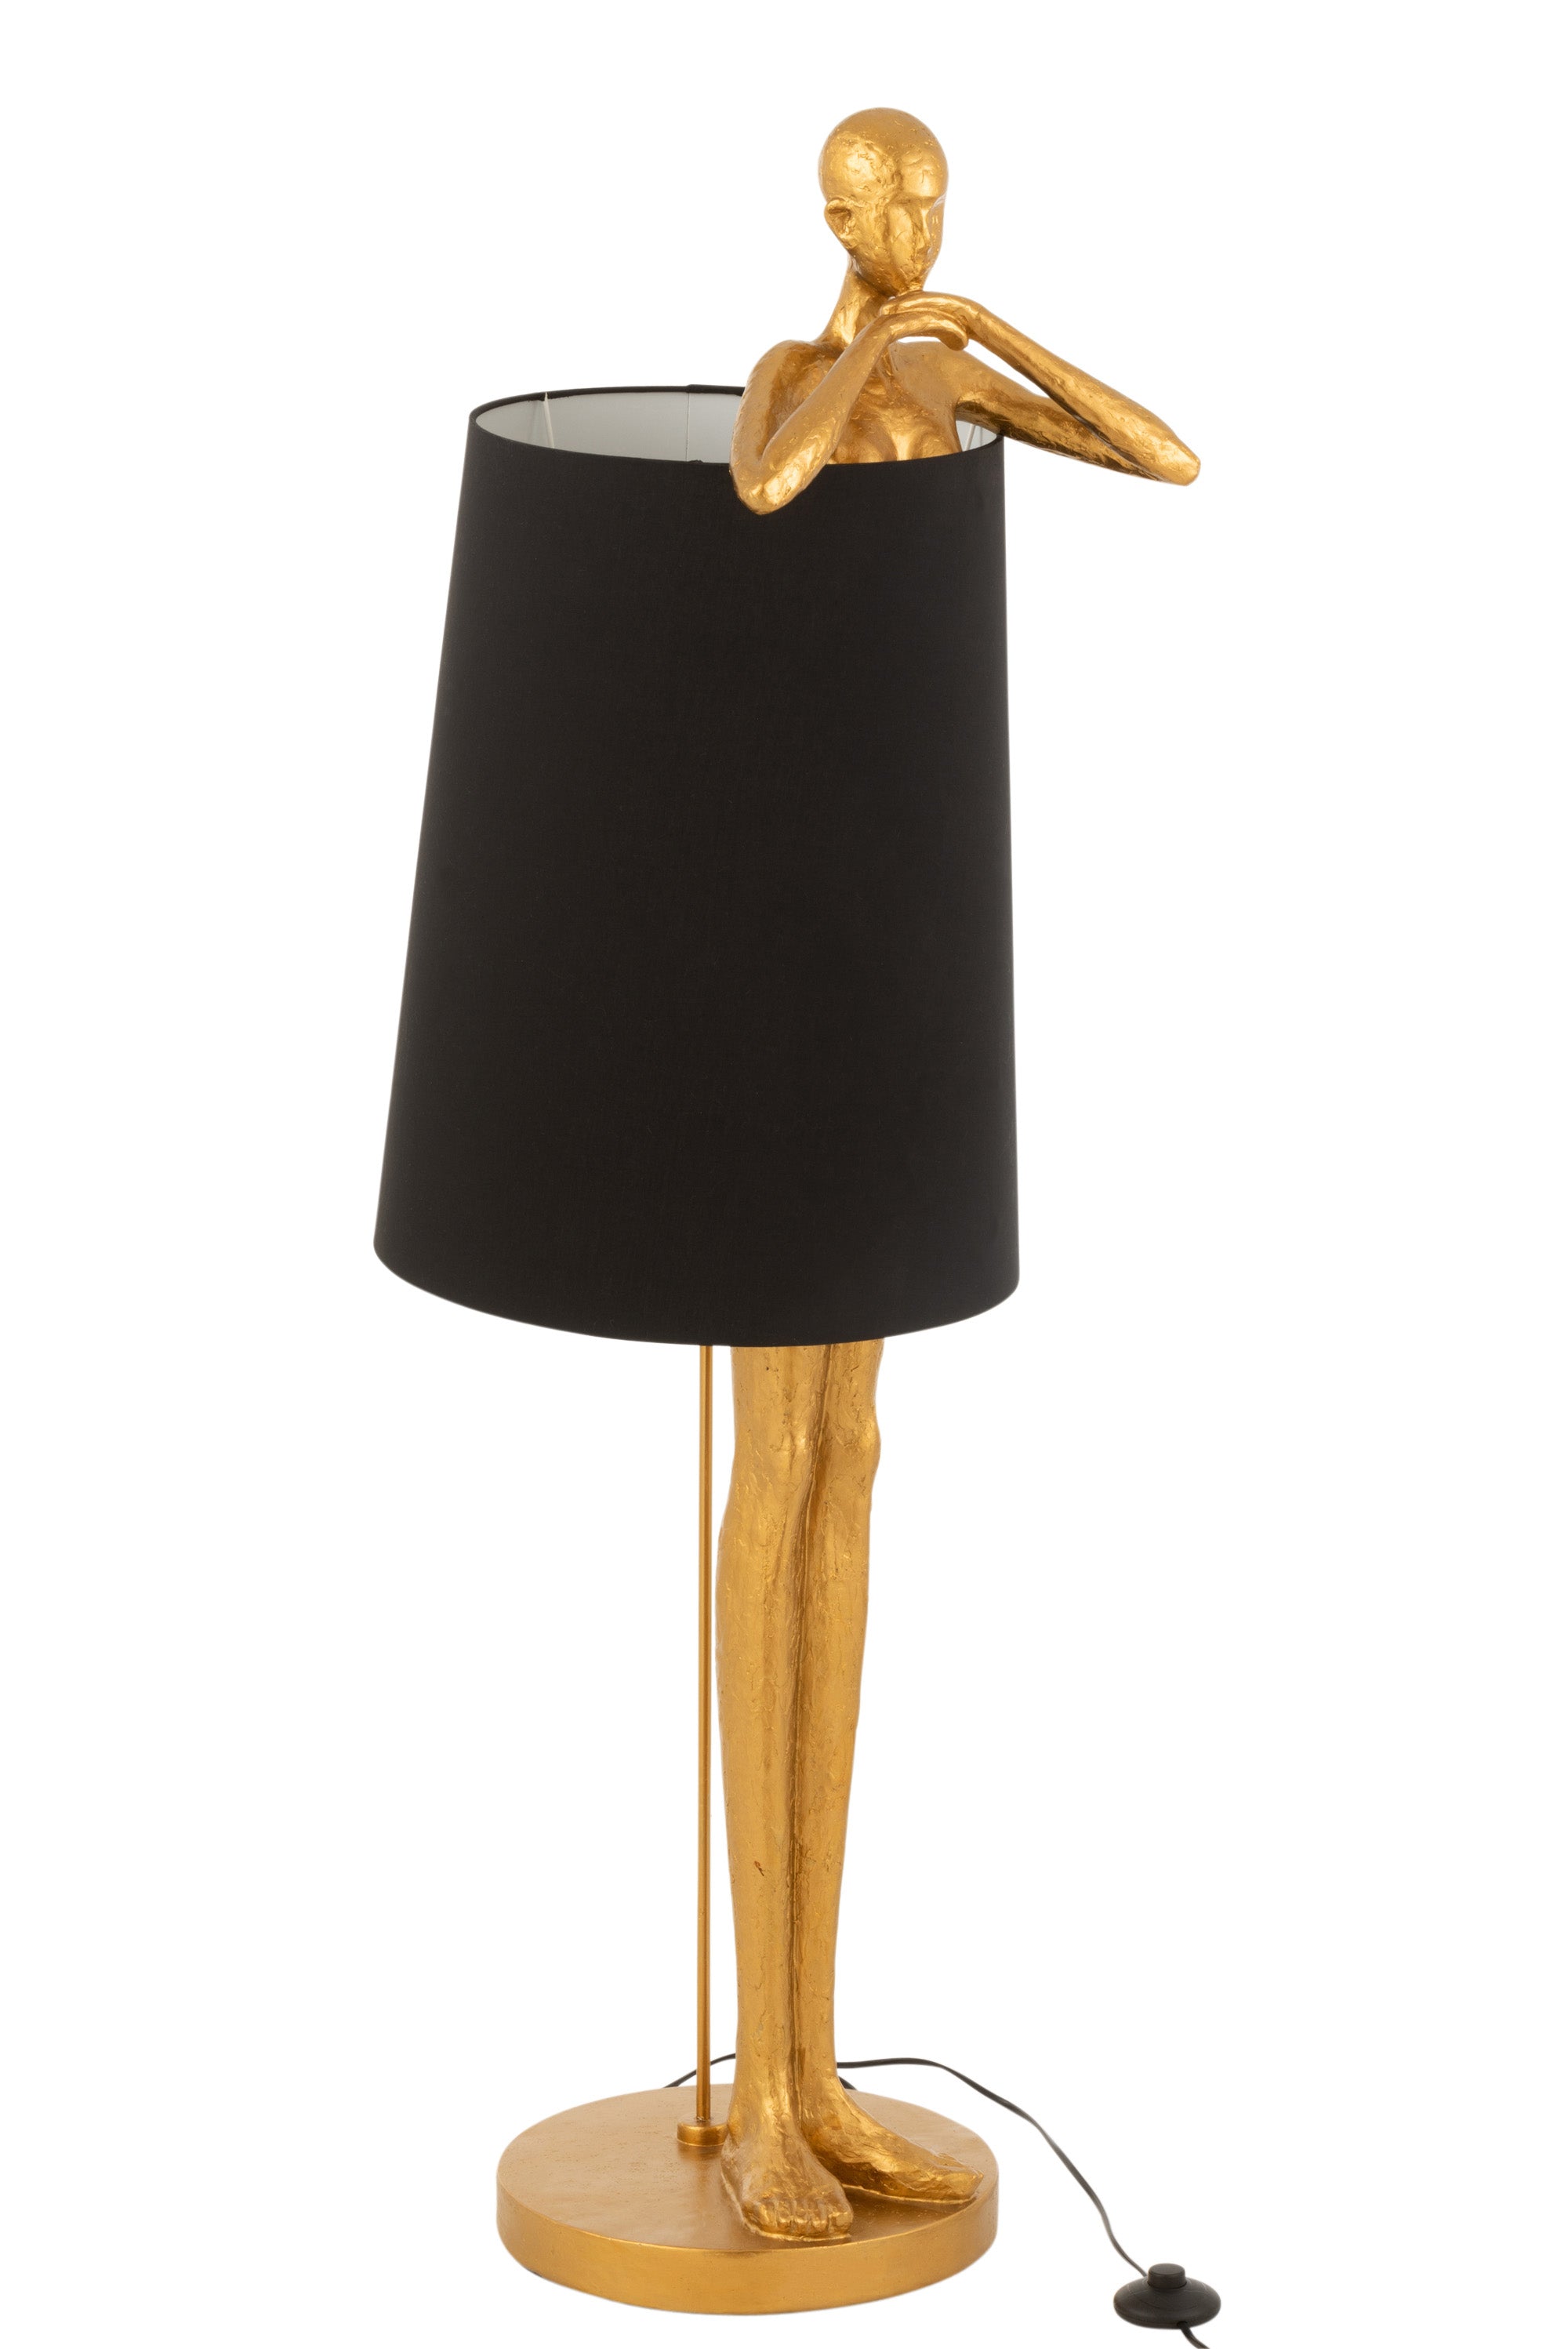 Stehlampe aus Polyresin in Gold, im Design eines großen schlanken Mannes auf einem kleinen runden Sockel stehend, dessen Oberkörper ab den Oberschenkeln von einem schwarzen Lampenschirm umgeben wird, Arme, Schultern und Kopf ragen über den Schirm hinaus.